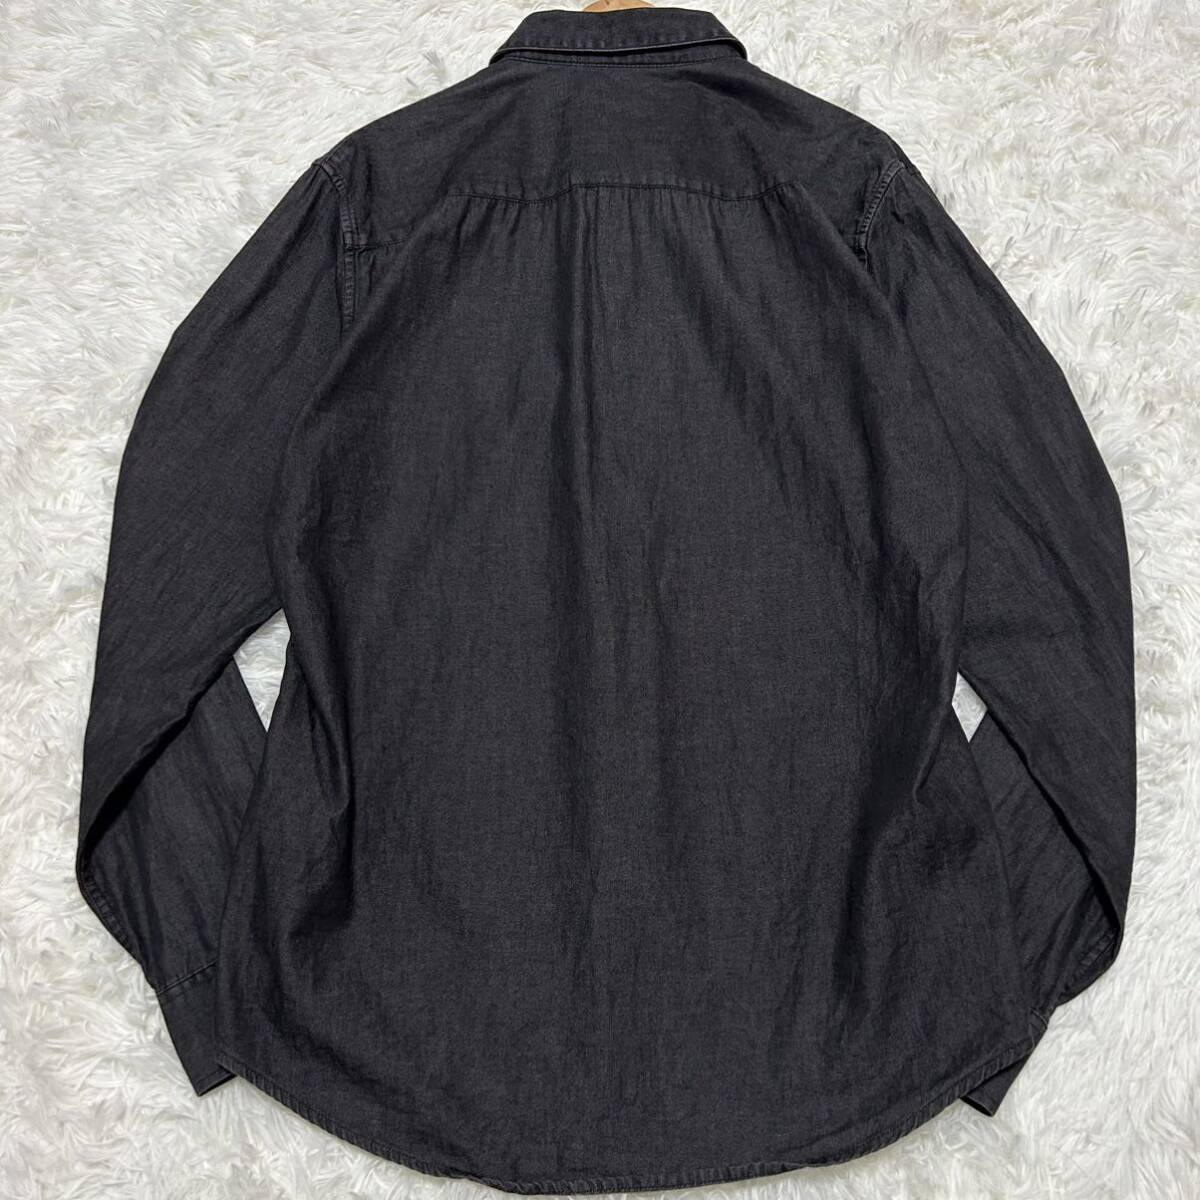  превосходный товар /XL соответствует * Armani Exchange Denim рубашка с длинным рукавом AX patch Logo черный чёрный серия жакет весна лето мужской ARMANI EXCHANGE